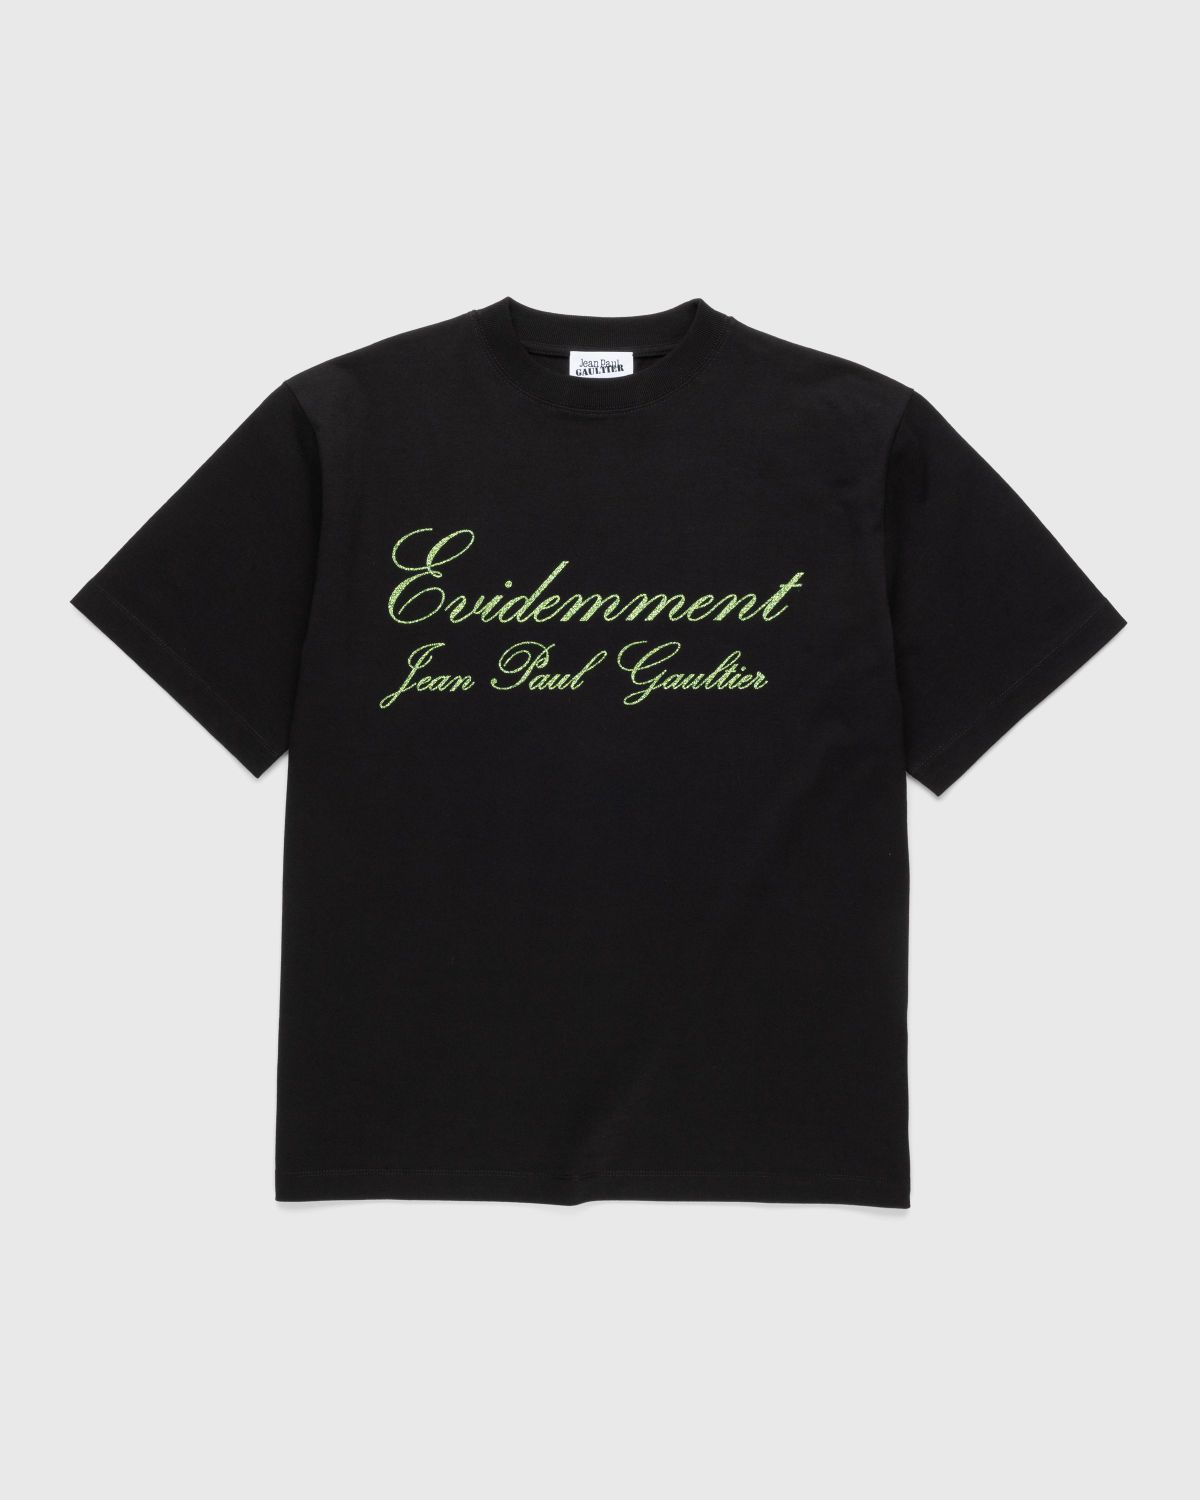 Jean Paul Gaultier – Évidemment T-Shirt Black - T-Shirts - Black - Image 1